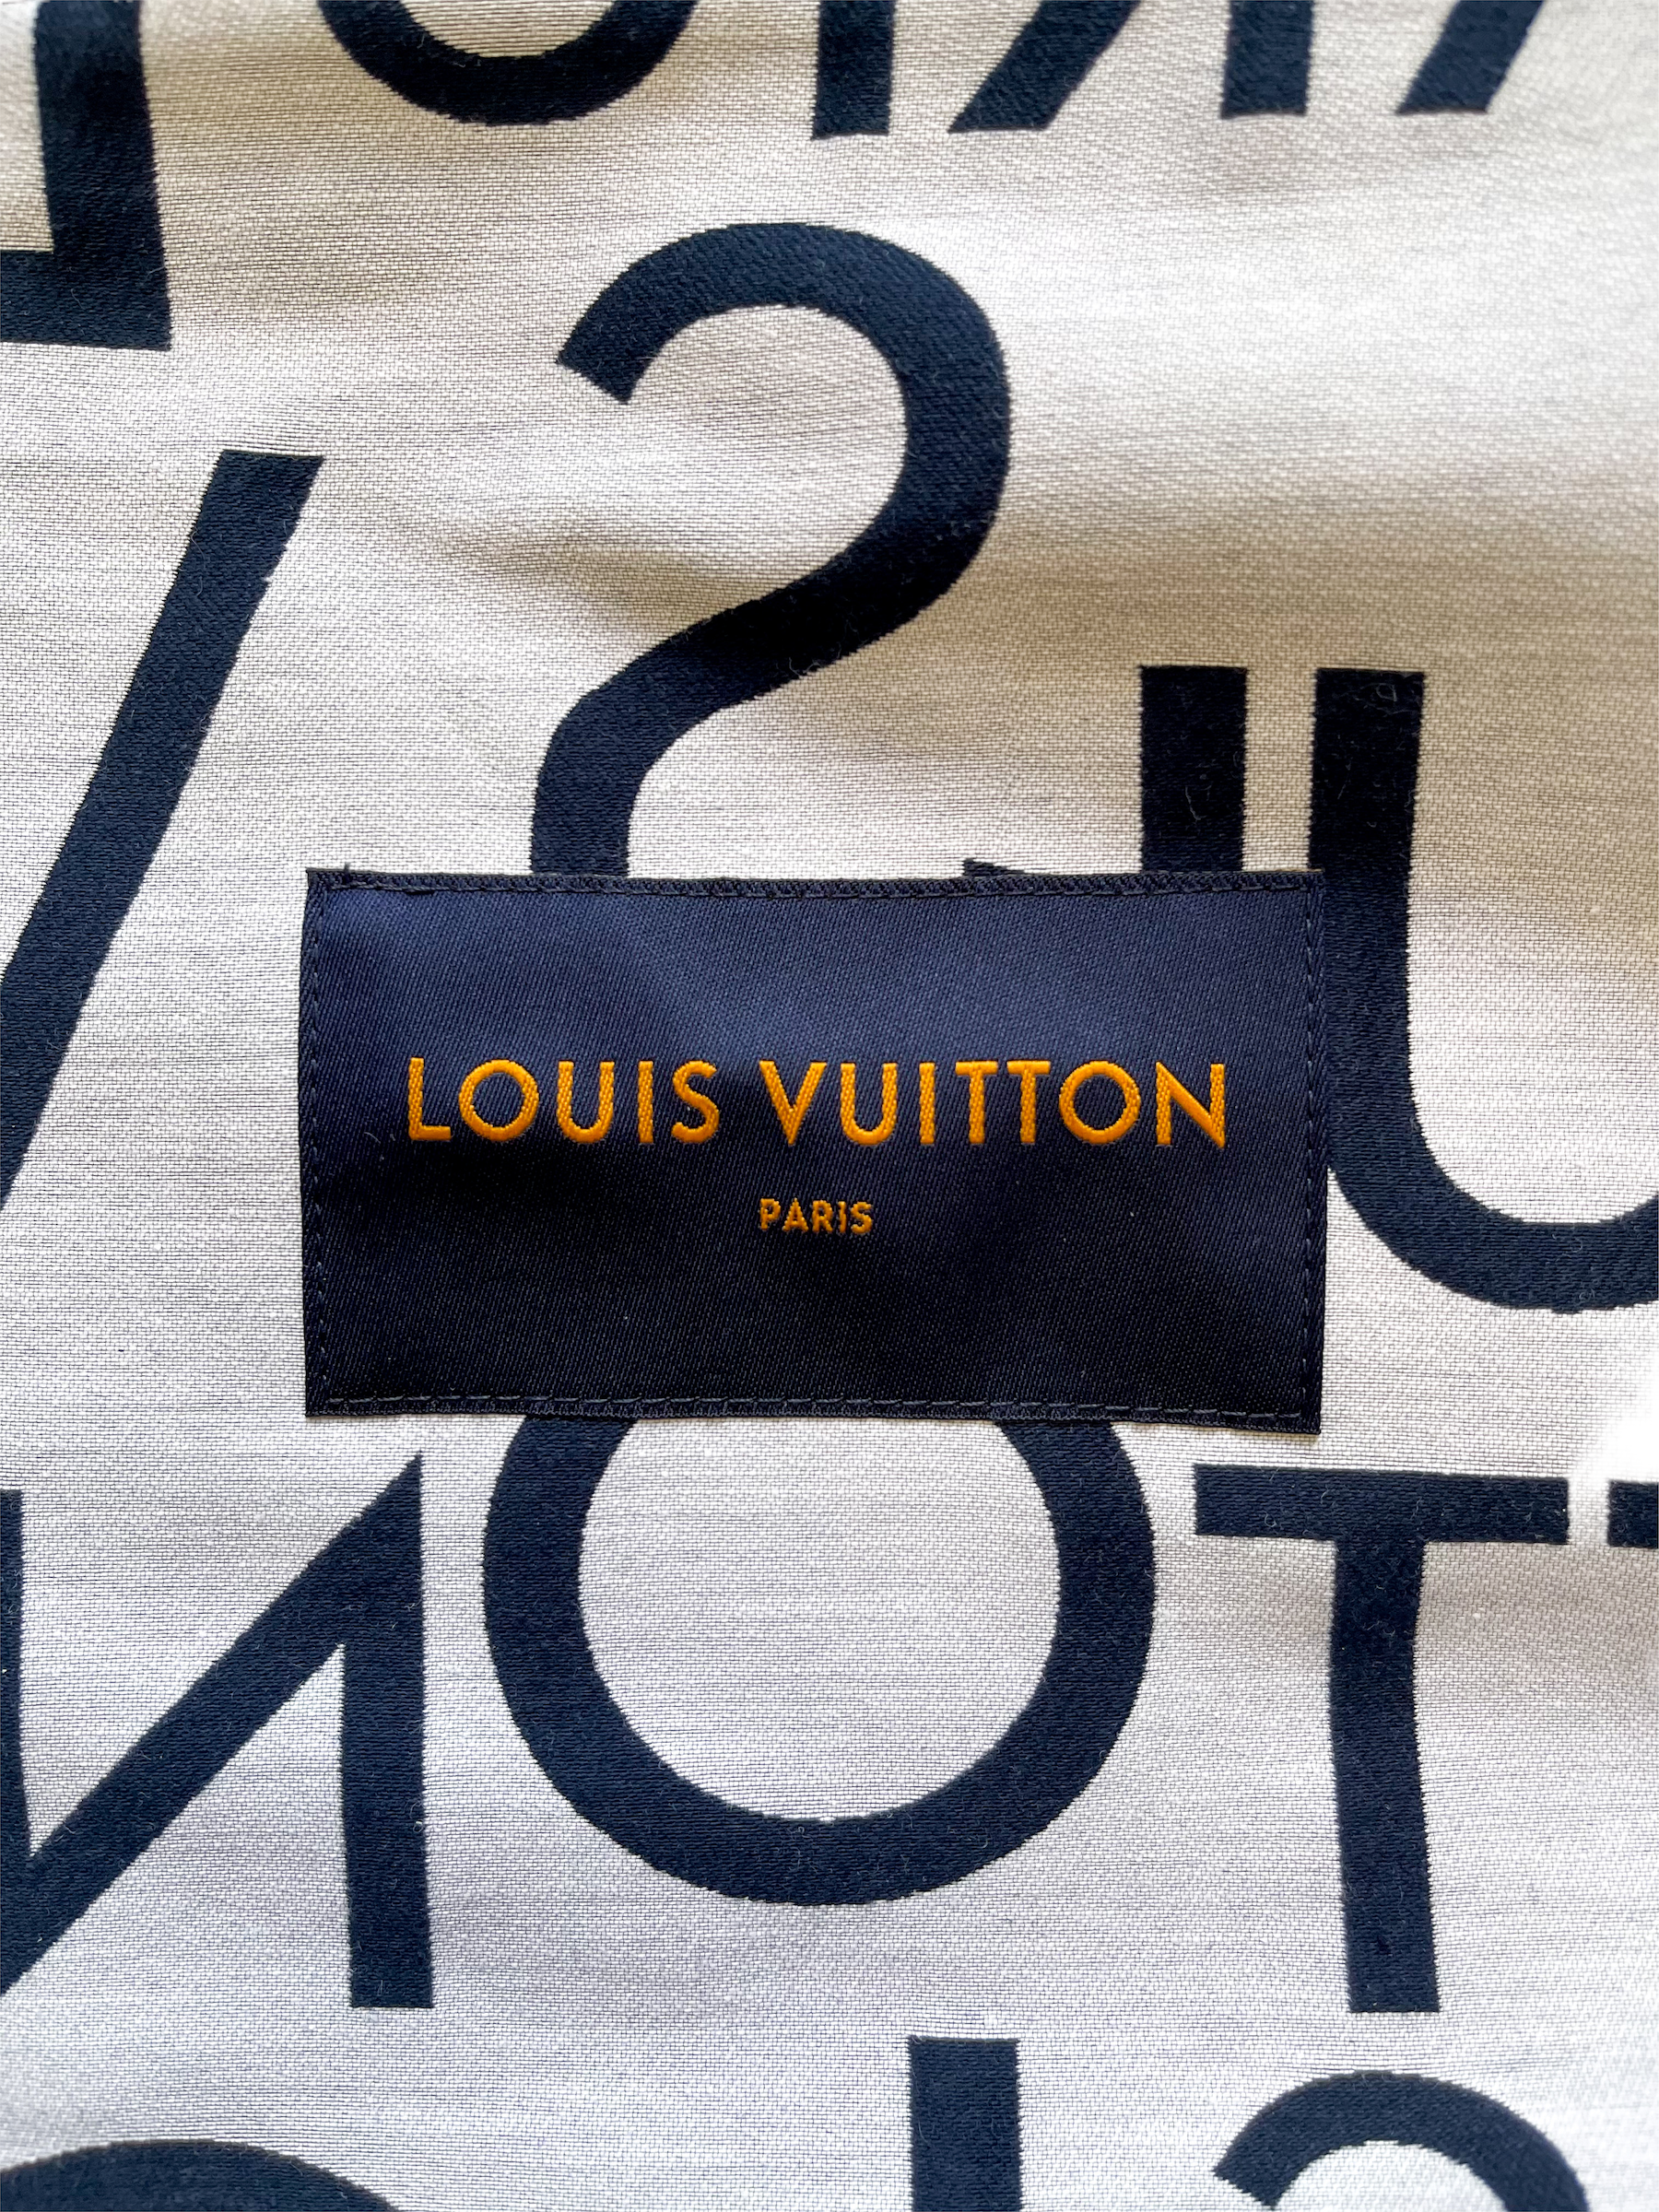 LOUIS VUITTON 19SS Galaxy Packable Jacket ギャラクシーパッカブルジャケット【値下げ】 ネイビー サイズ:50